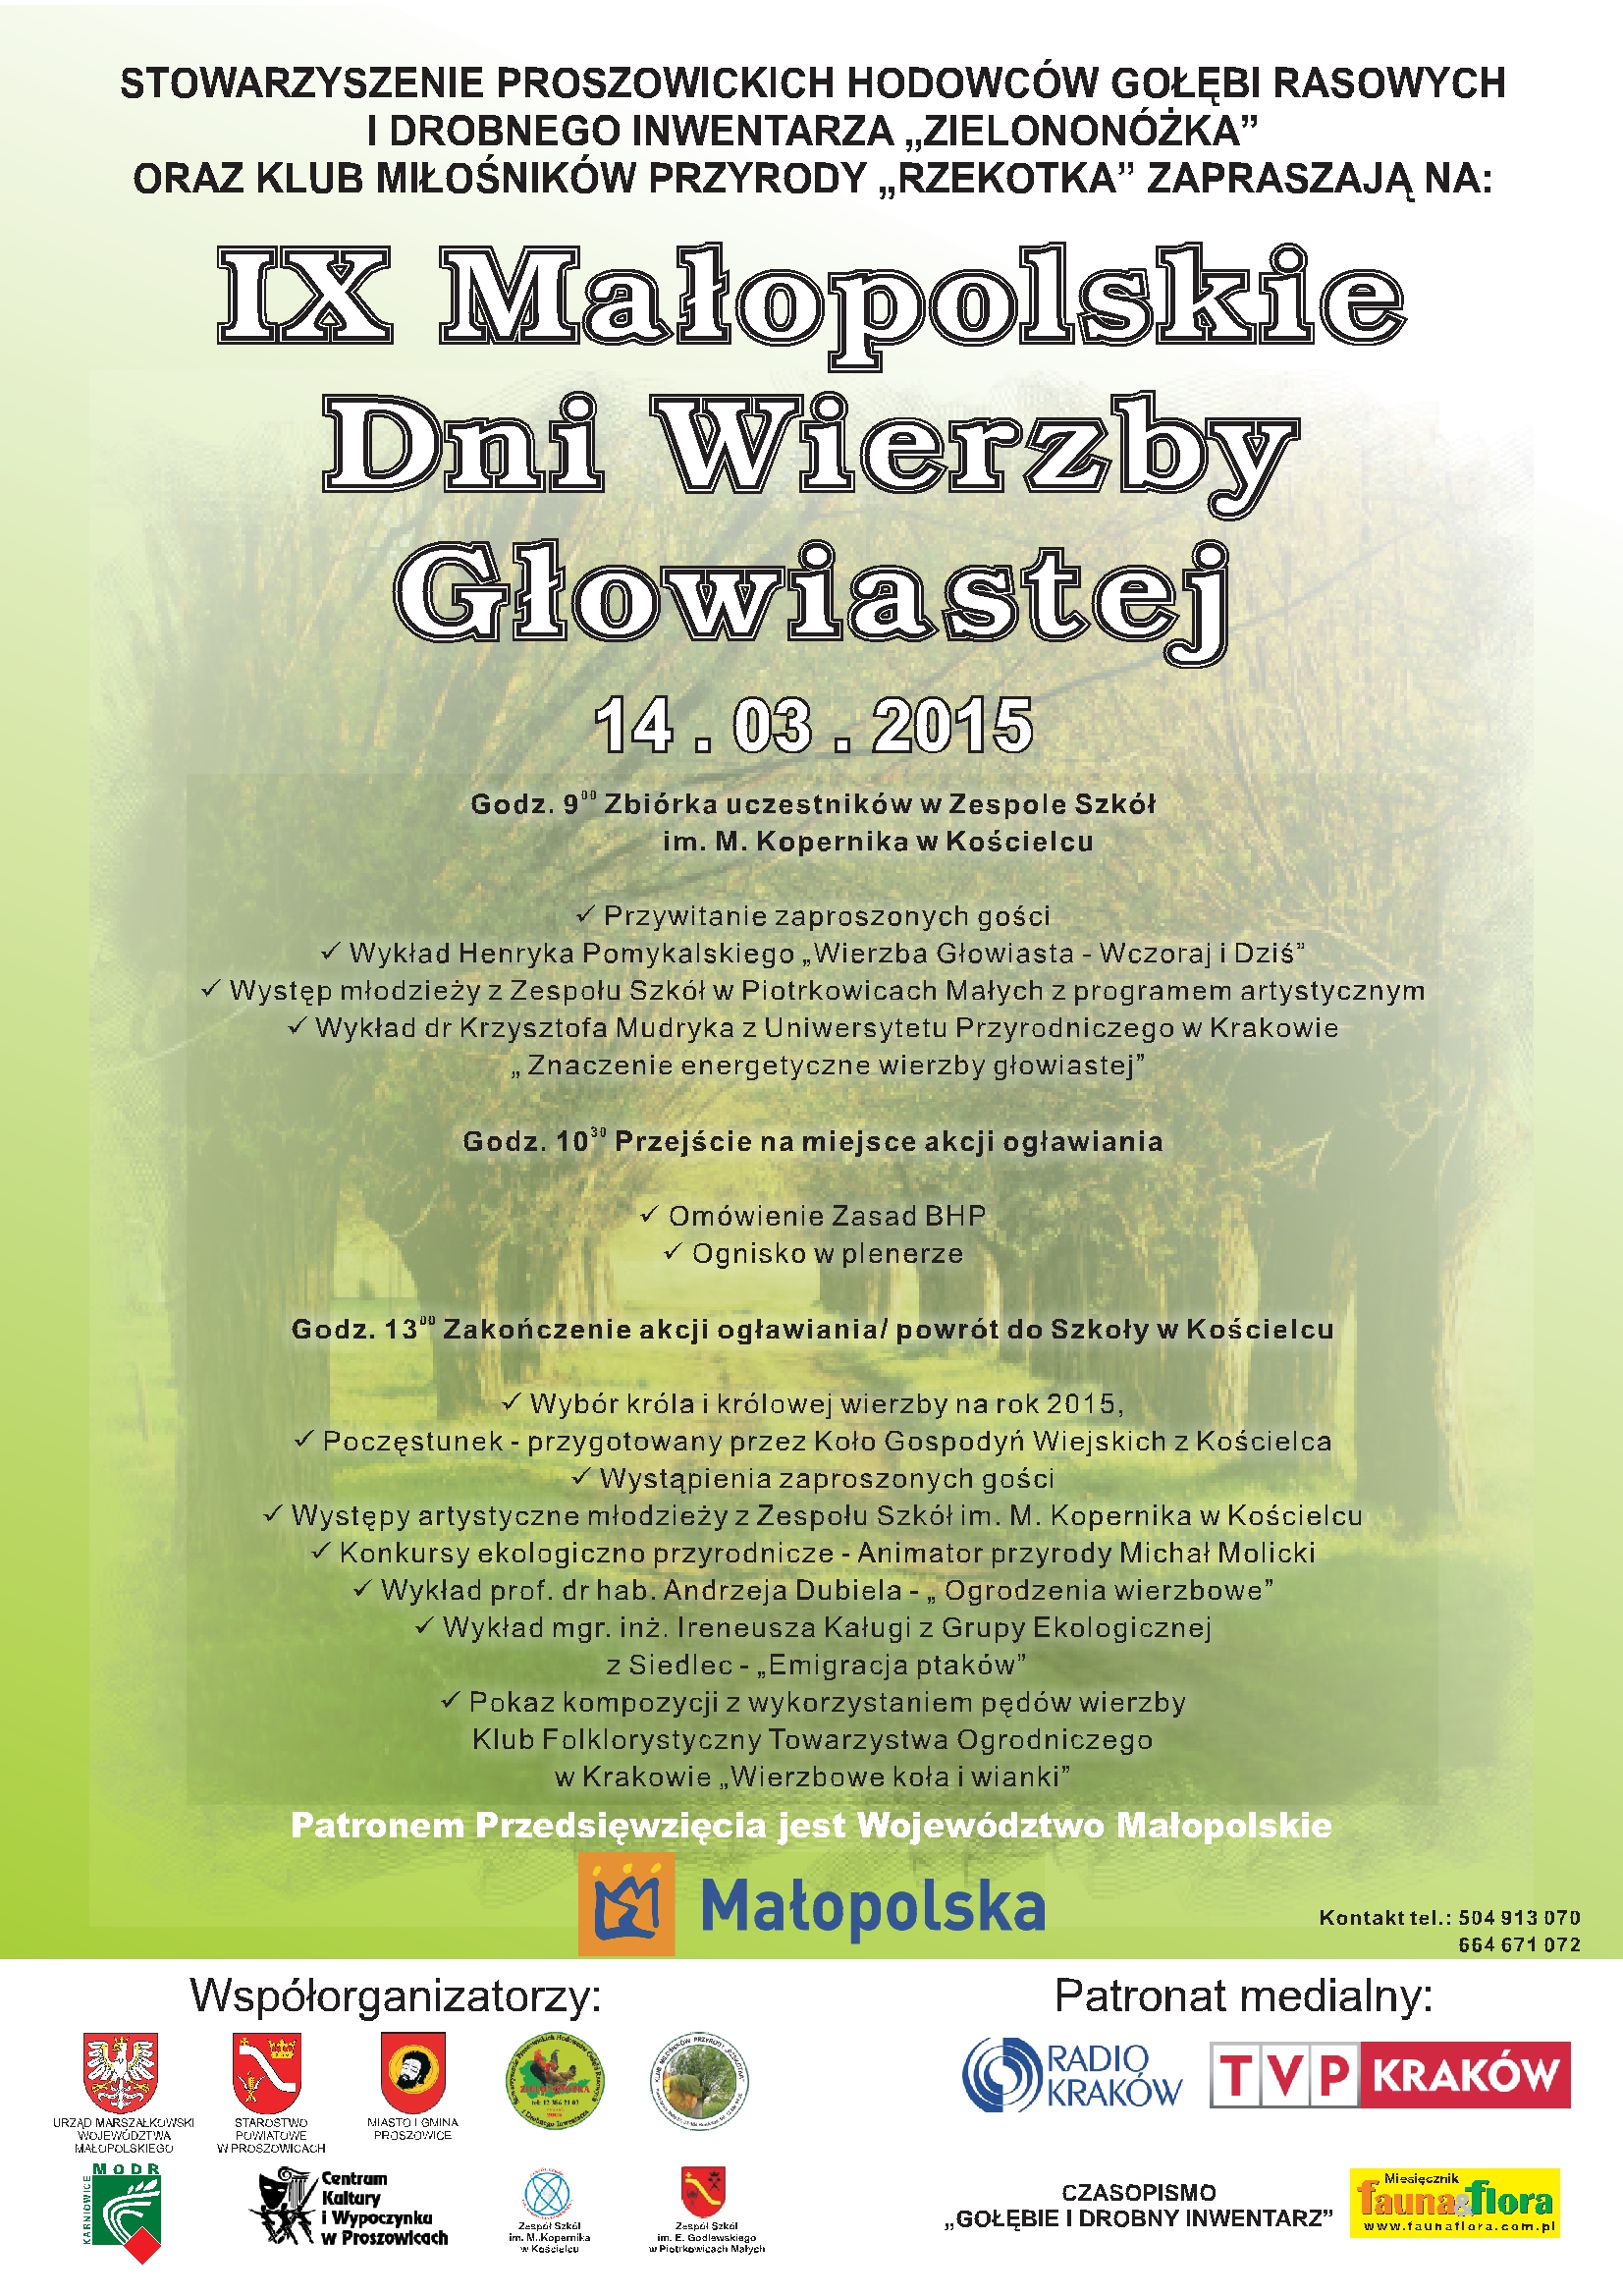 IX Małopolskie Dni Wierzby Głowiastej